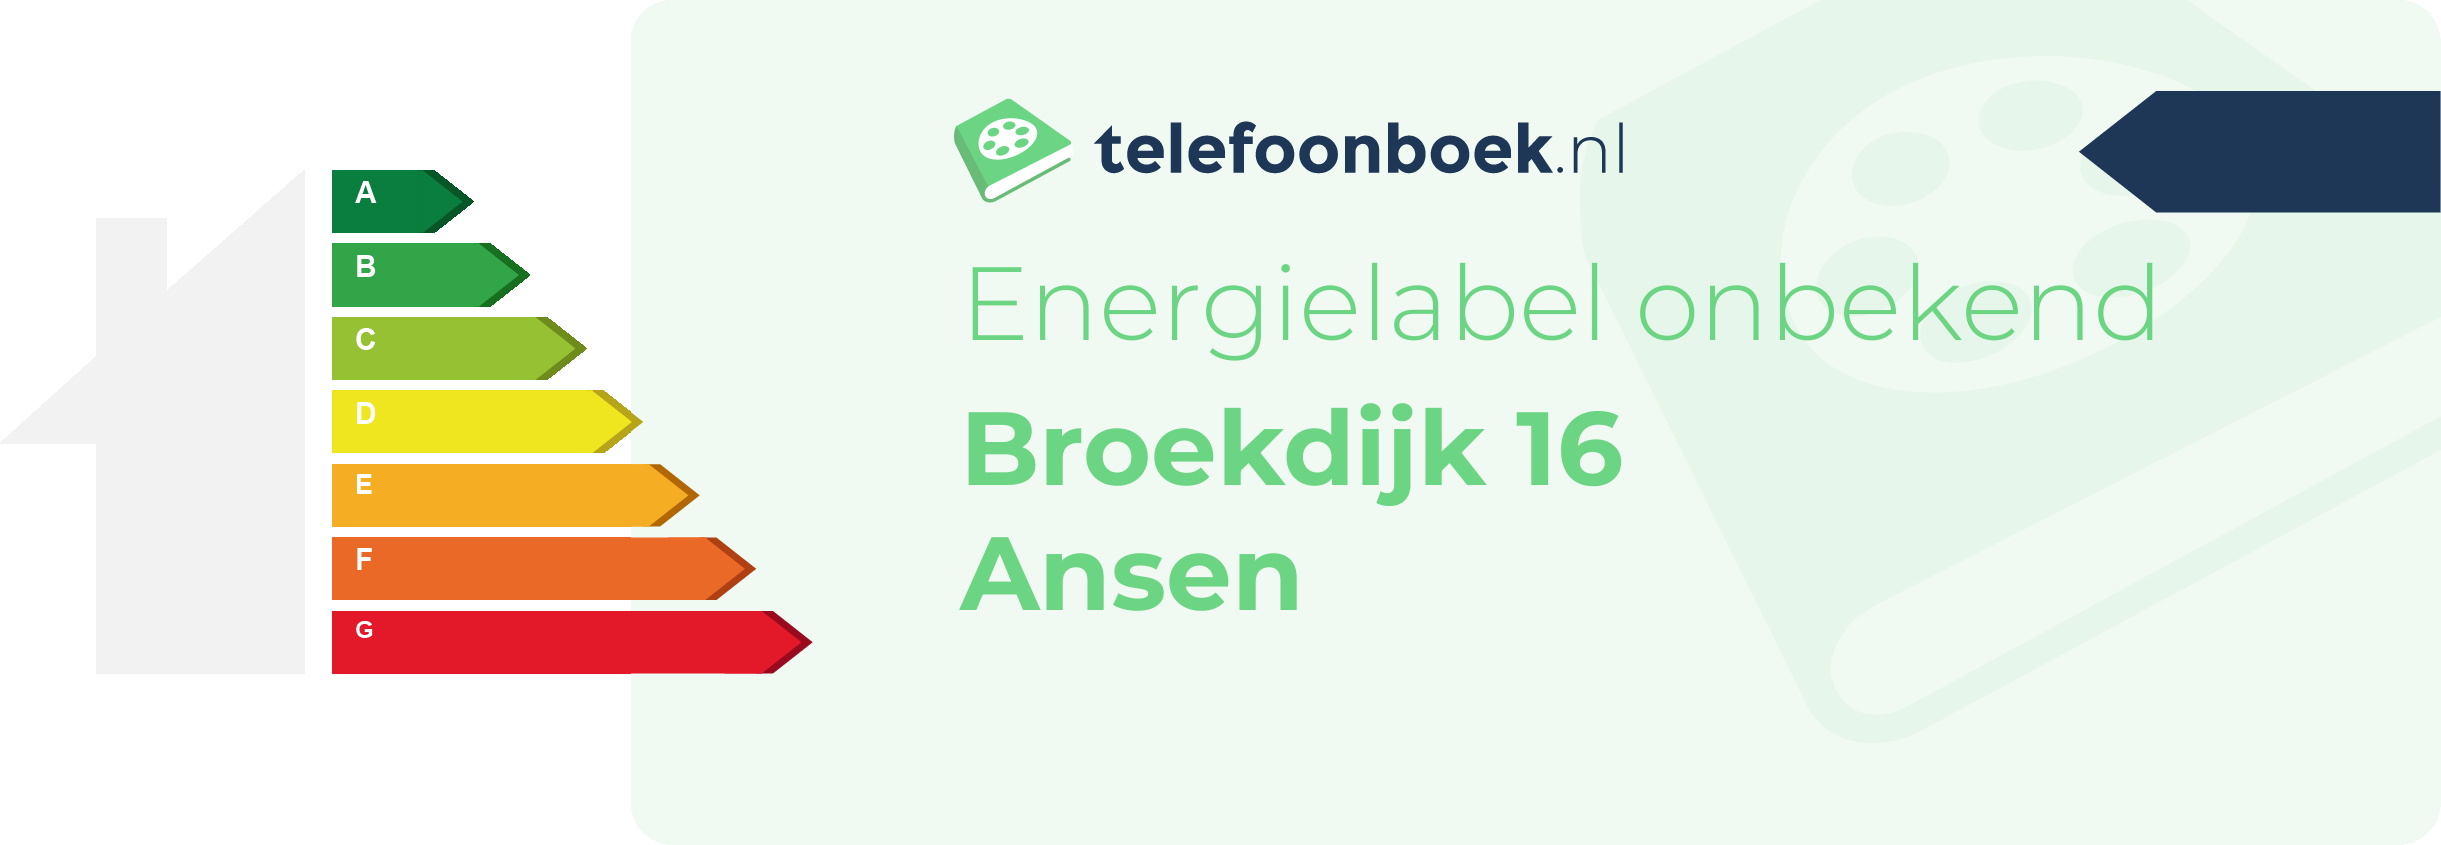 Energielabel Broekdijk 16 Ansen